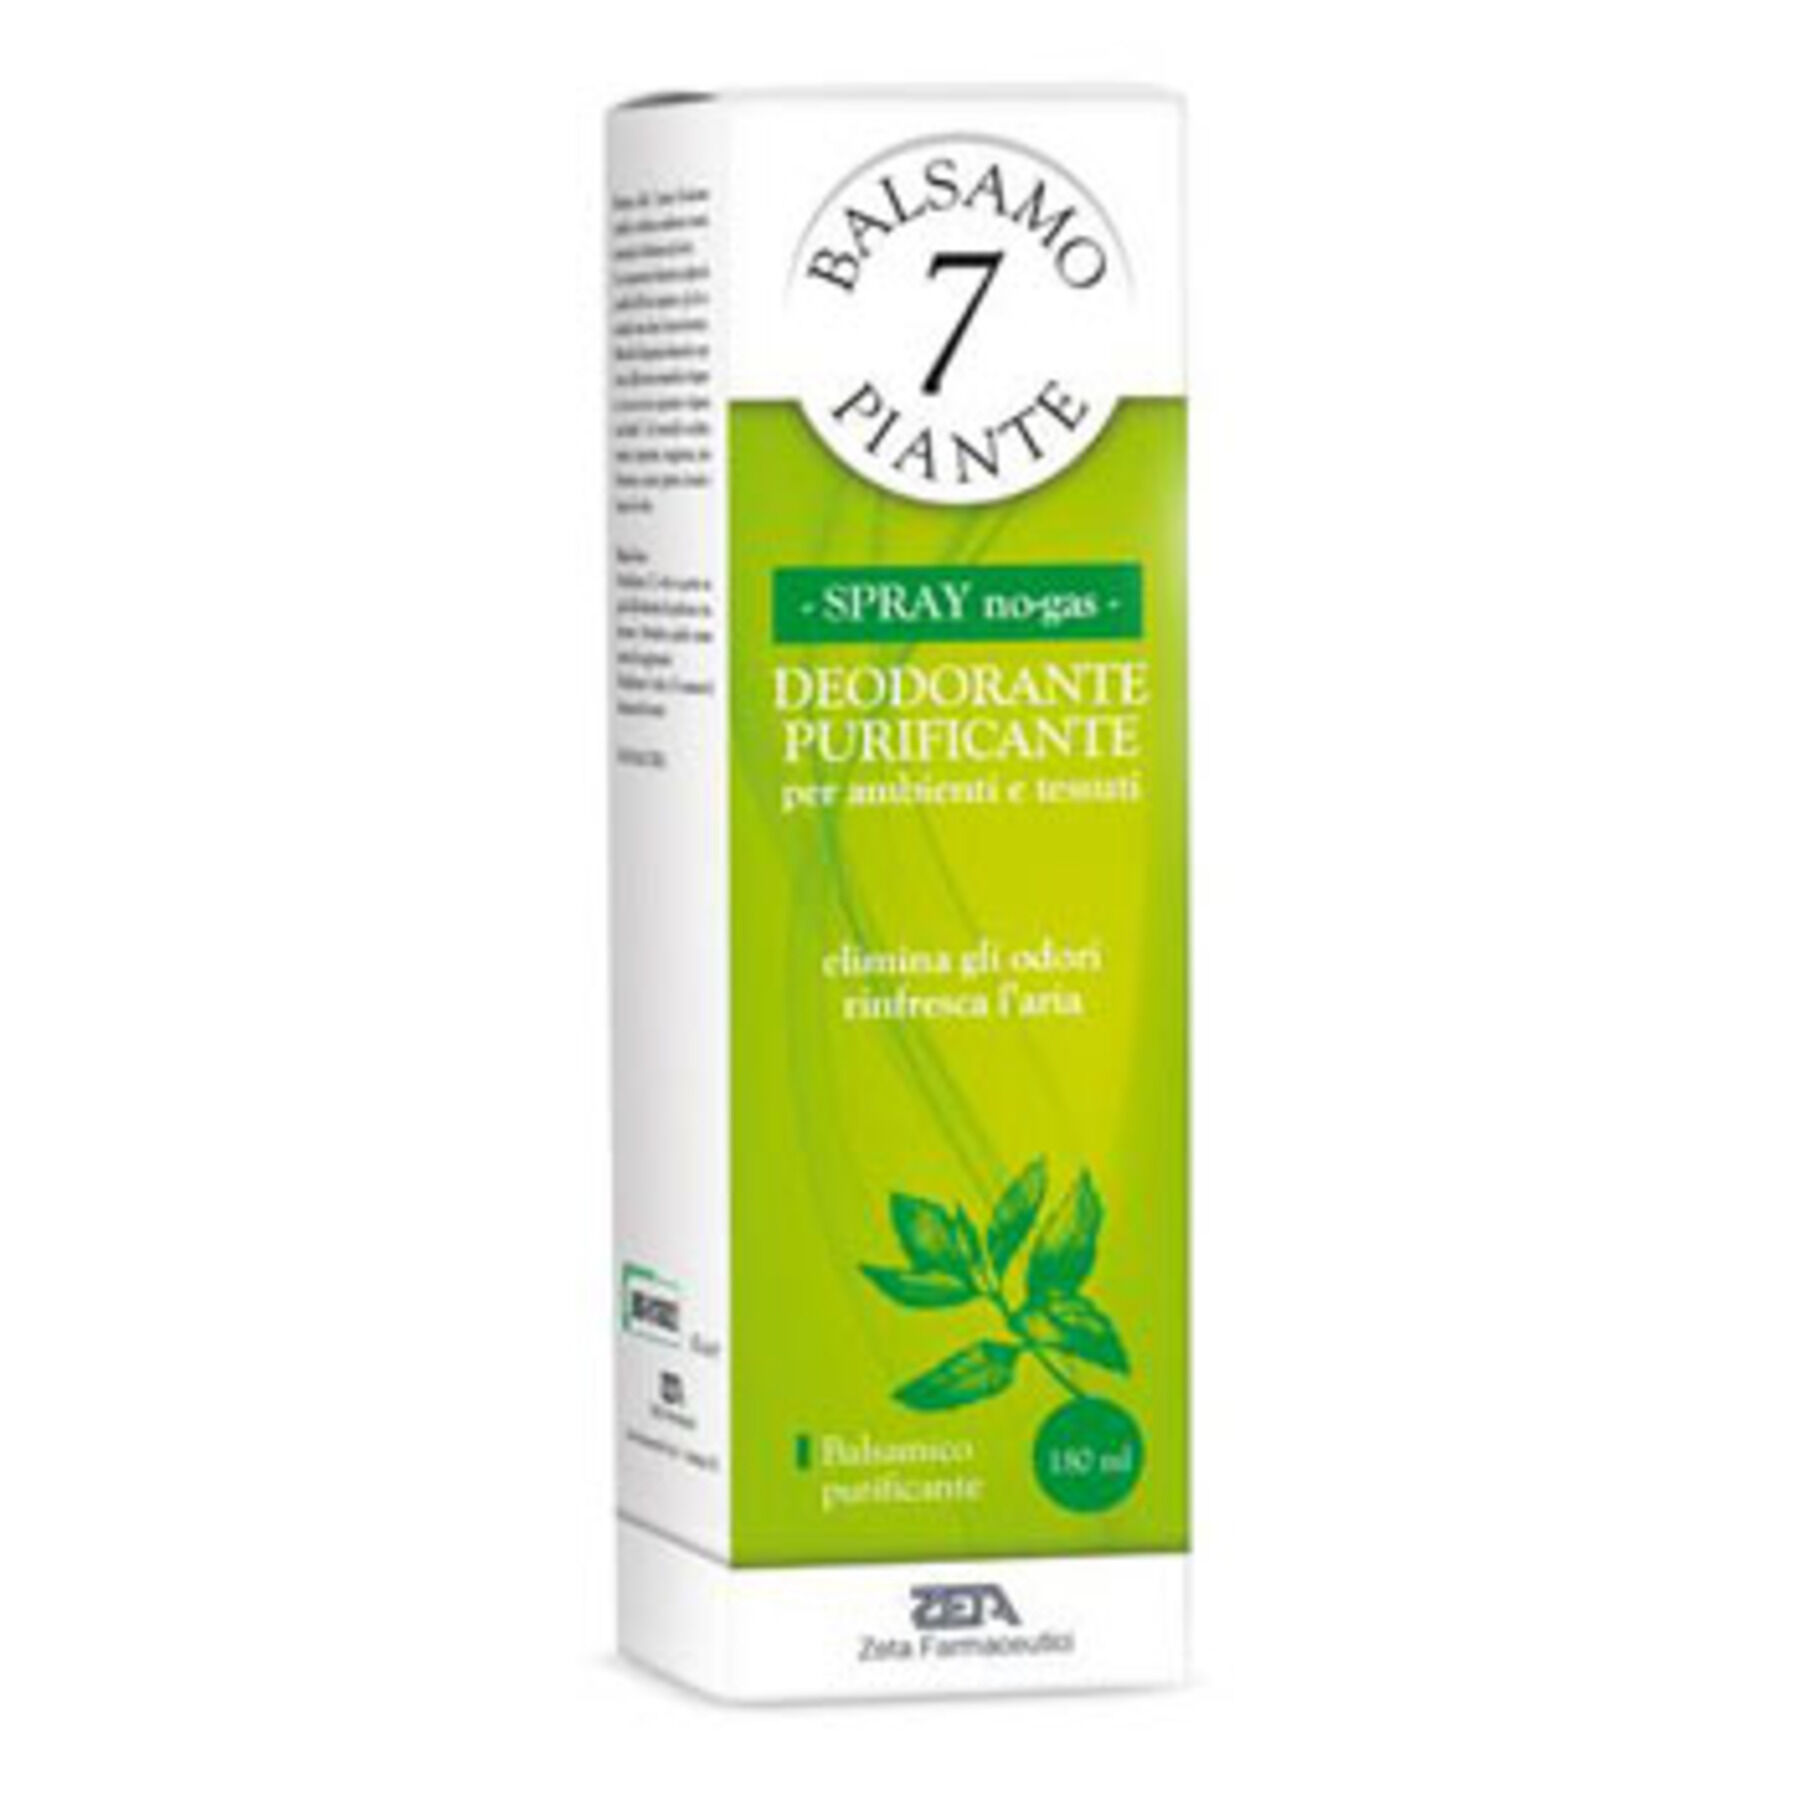 ZETA FARMACEUTICI SpA Balsamo delle 7 piante balsamico deodorante purificante per ambienti e tessuti pompa spray + astuccio 180 ml